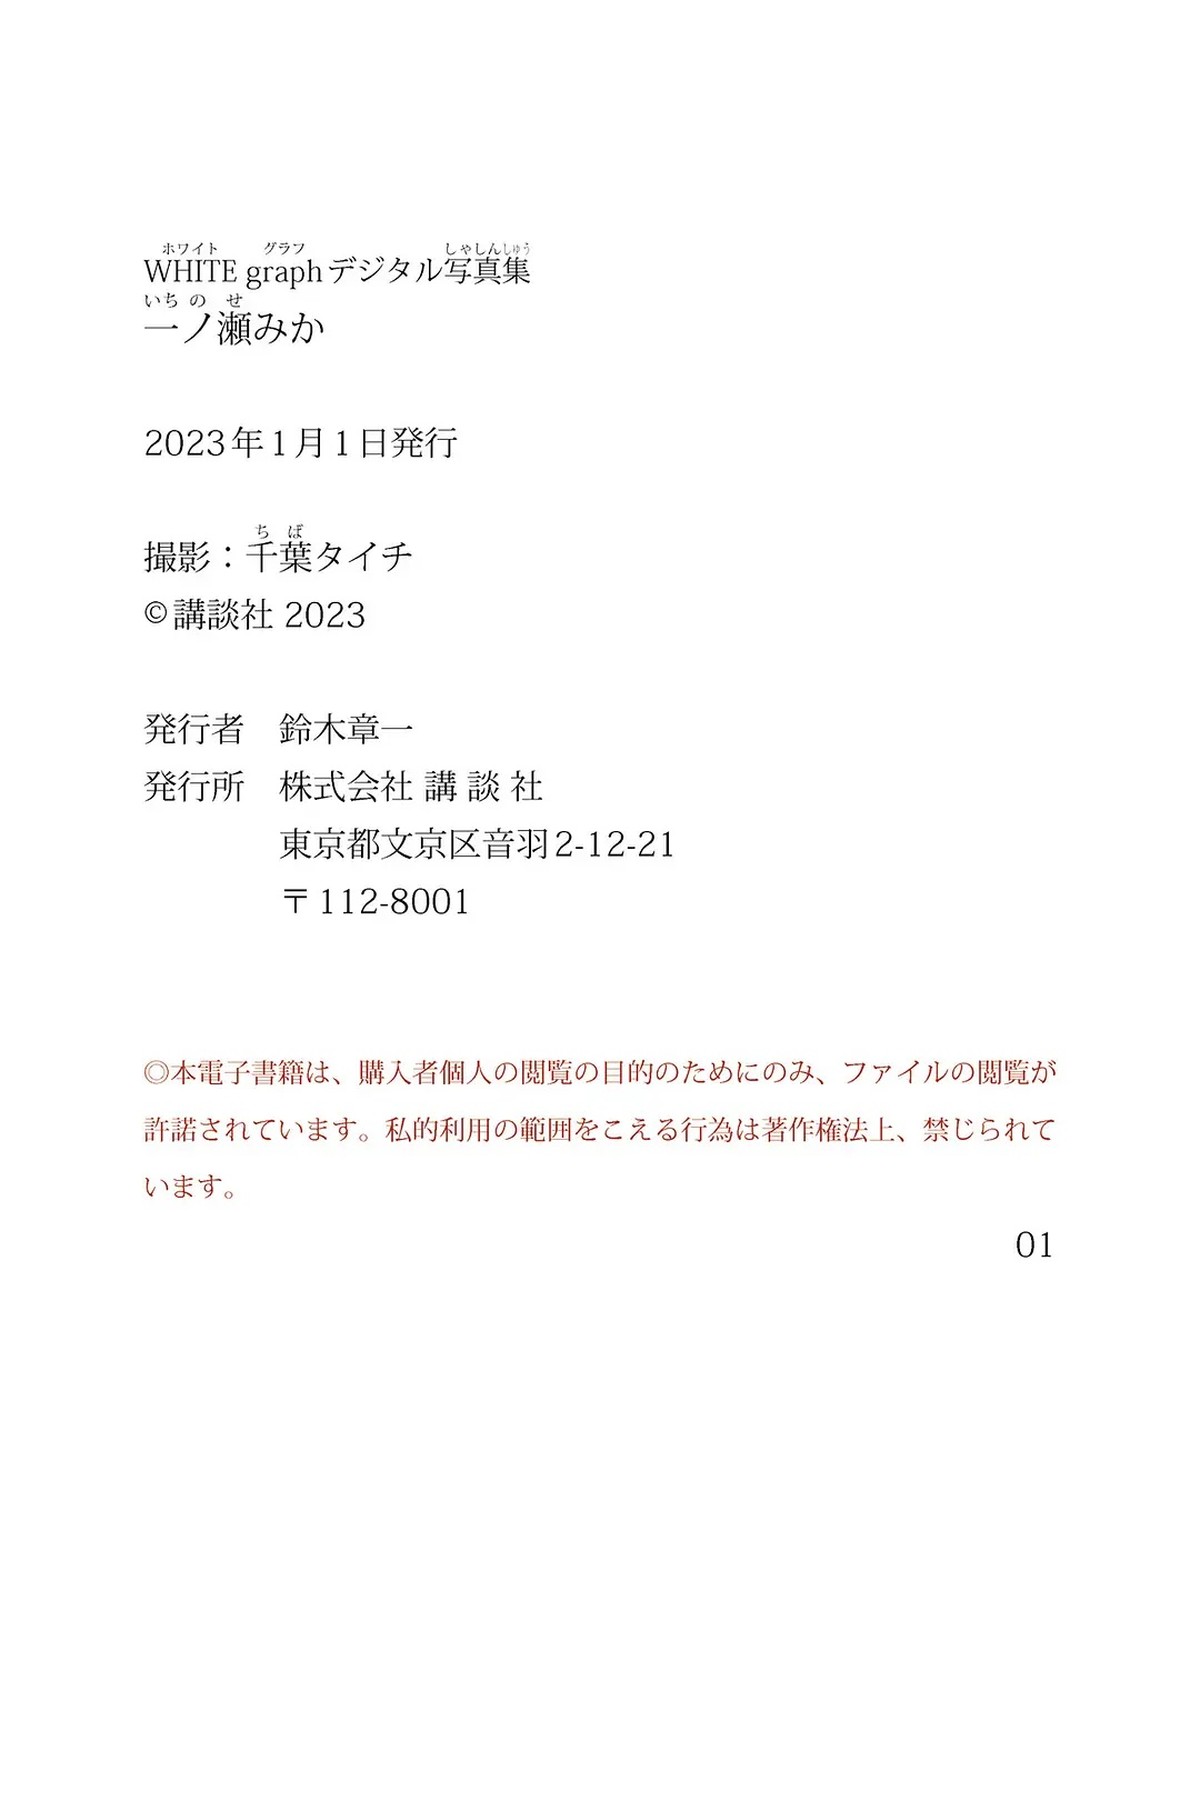 WHITE Graph 2022 12 07 Mika Ichinose 一ノ瀬みか 0048 6669732755.jpg